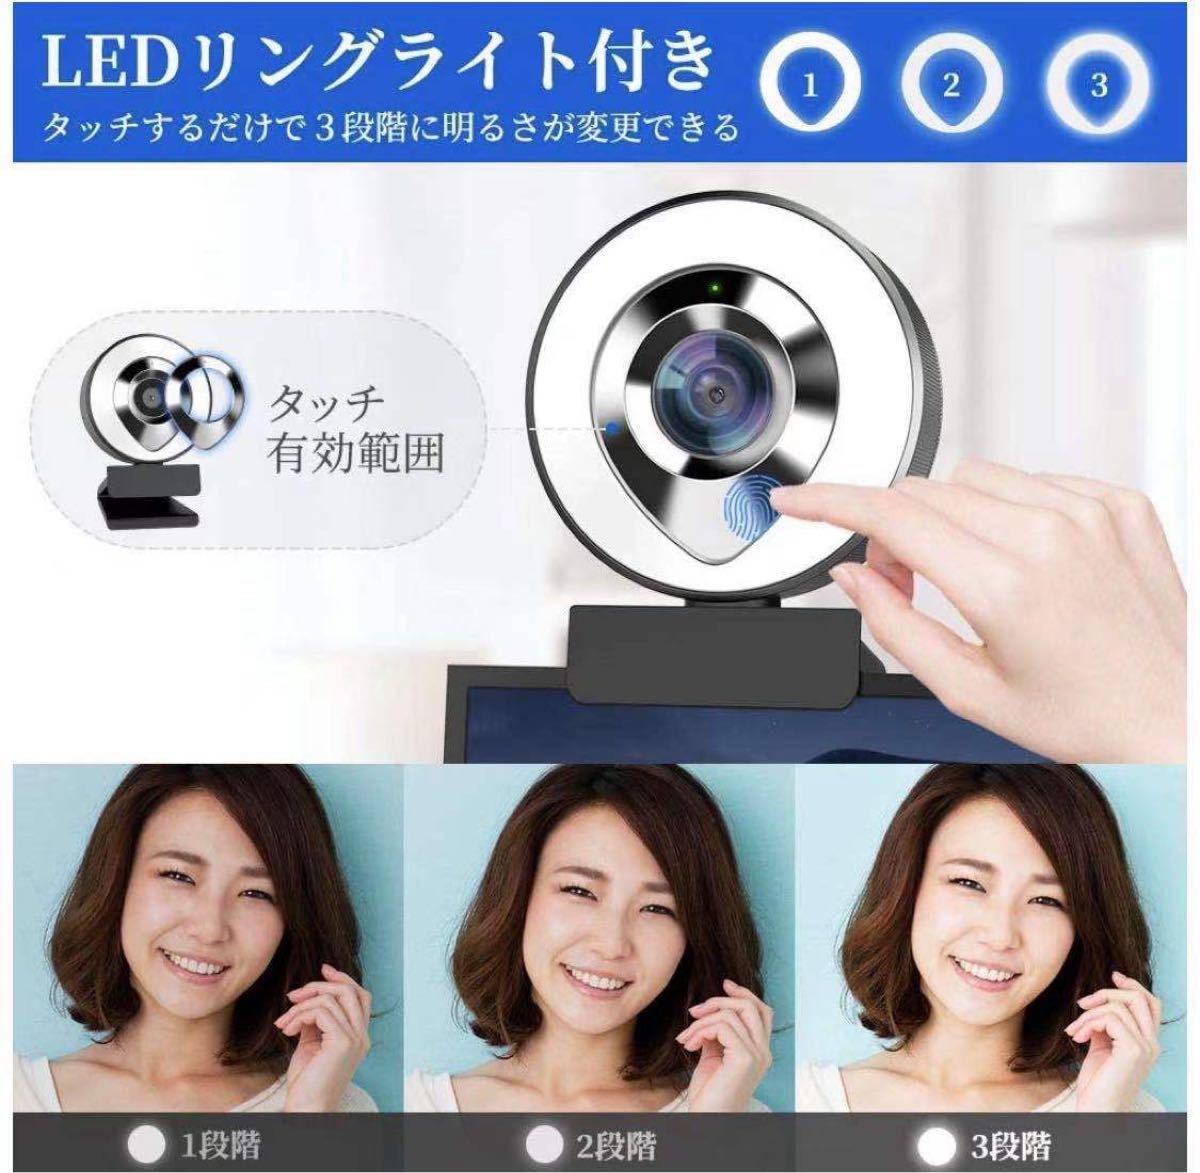 ウェブカメラ LEDライト フルHD 1080P 30FPS 高画質 200万画素 X-Kim webカメラ デュアルマイク内蔵